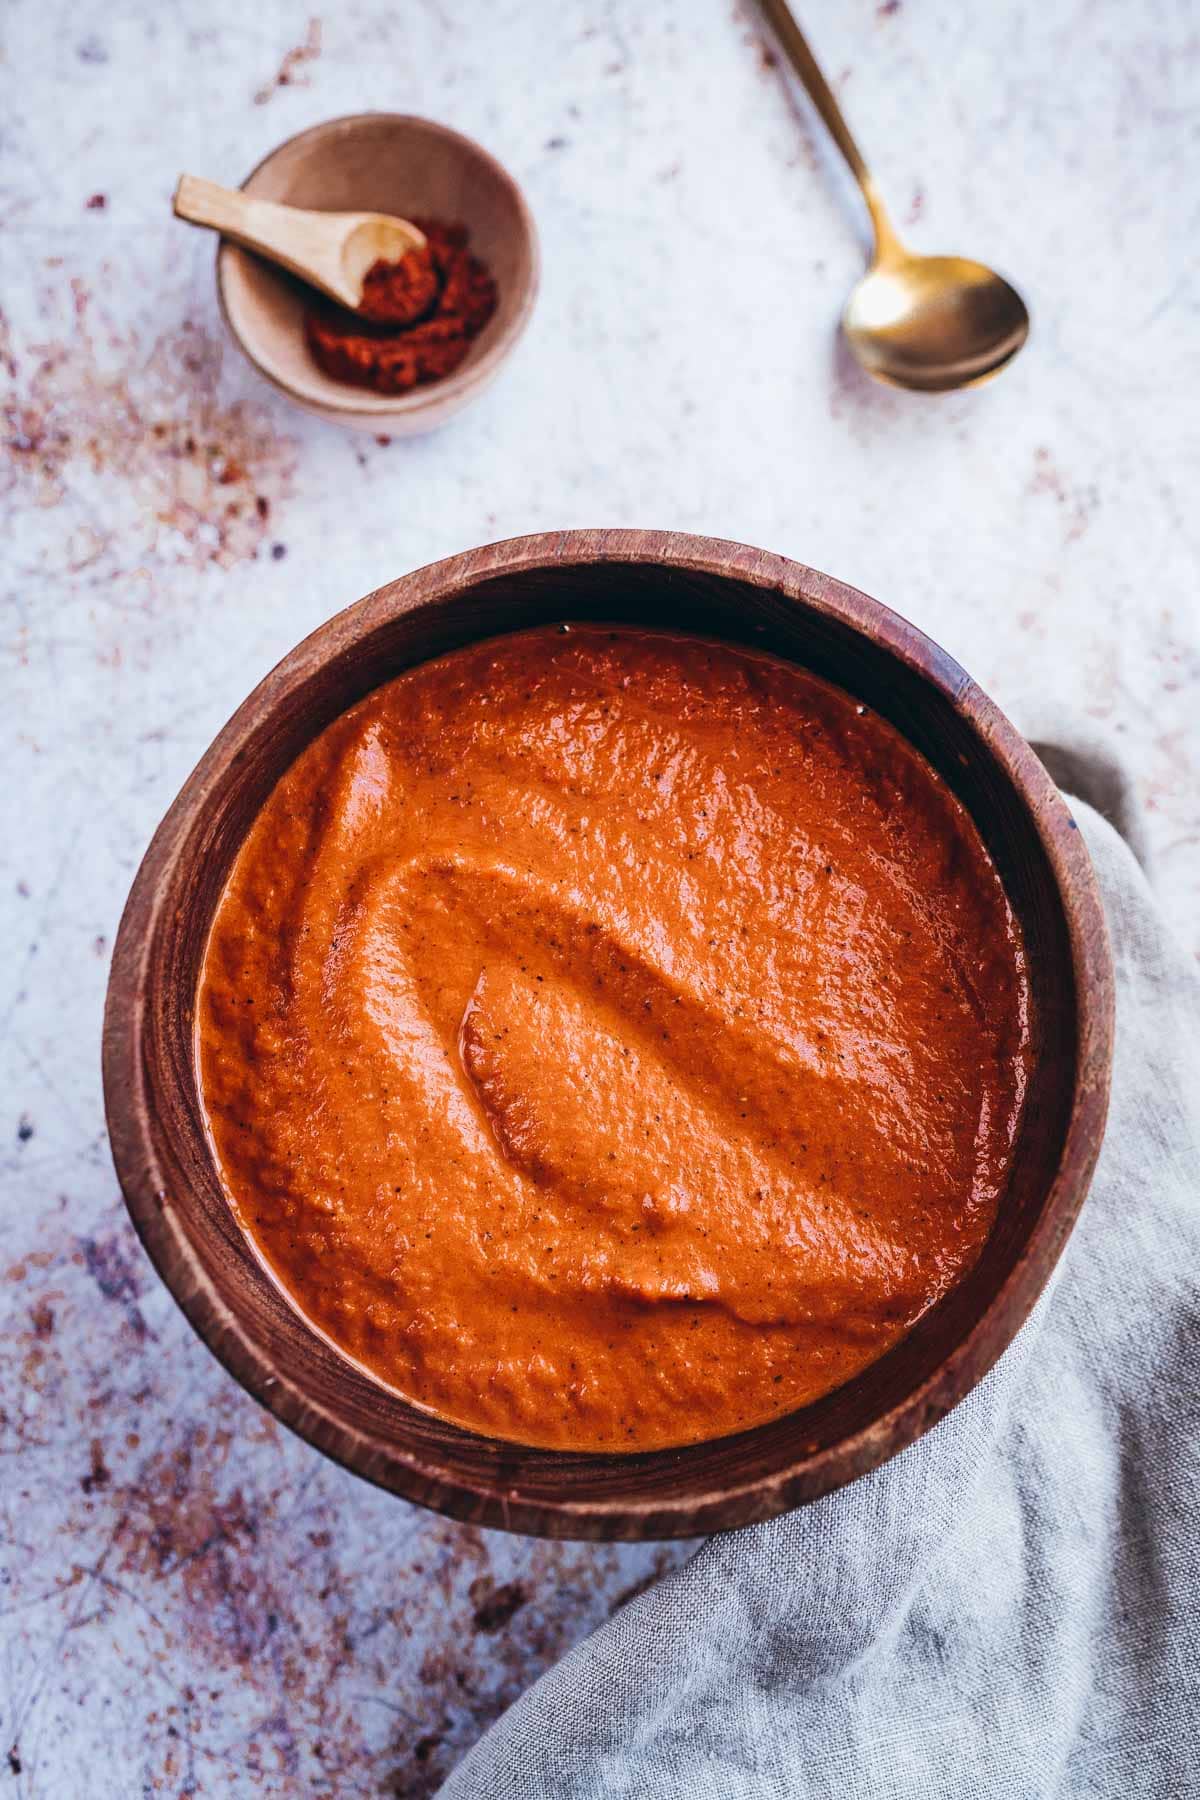 swirls of orange red bravas sauce fill a dark wooden bowl.